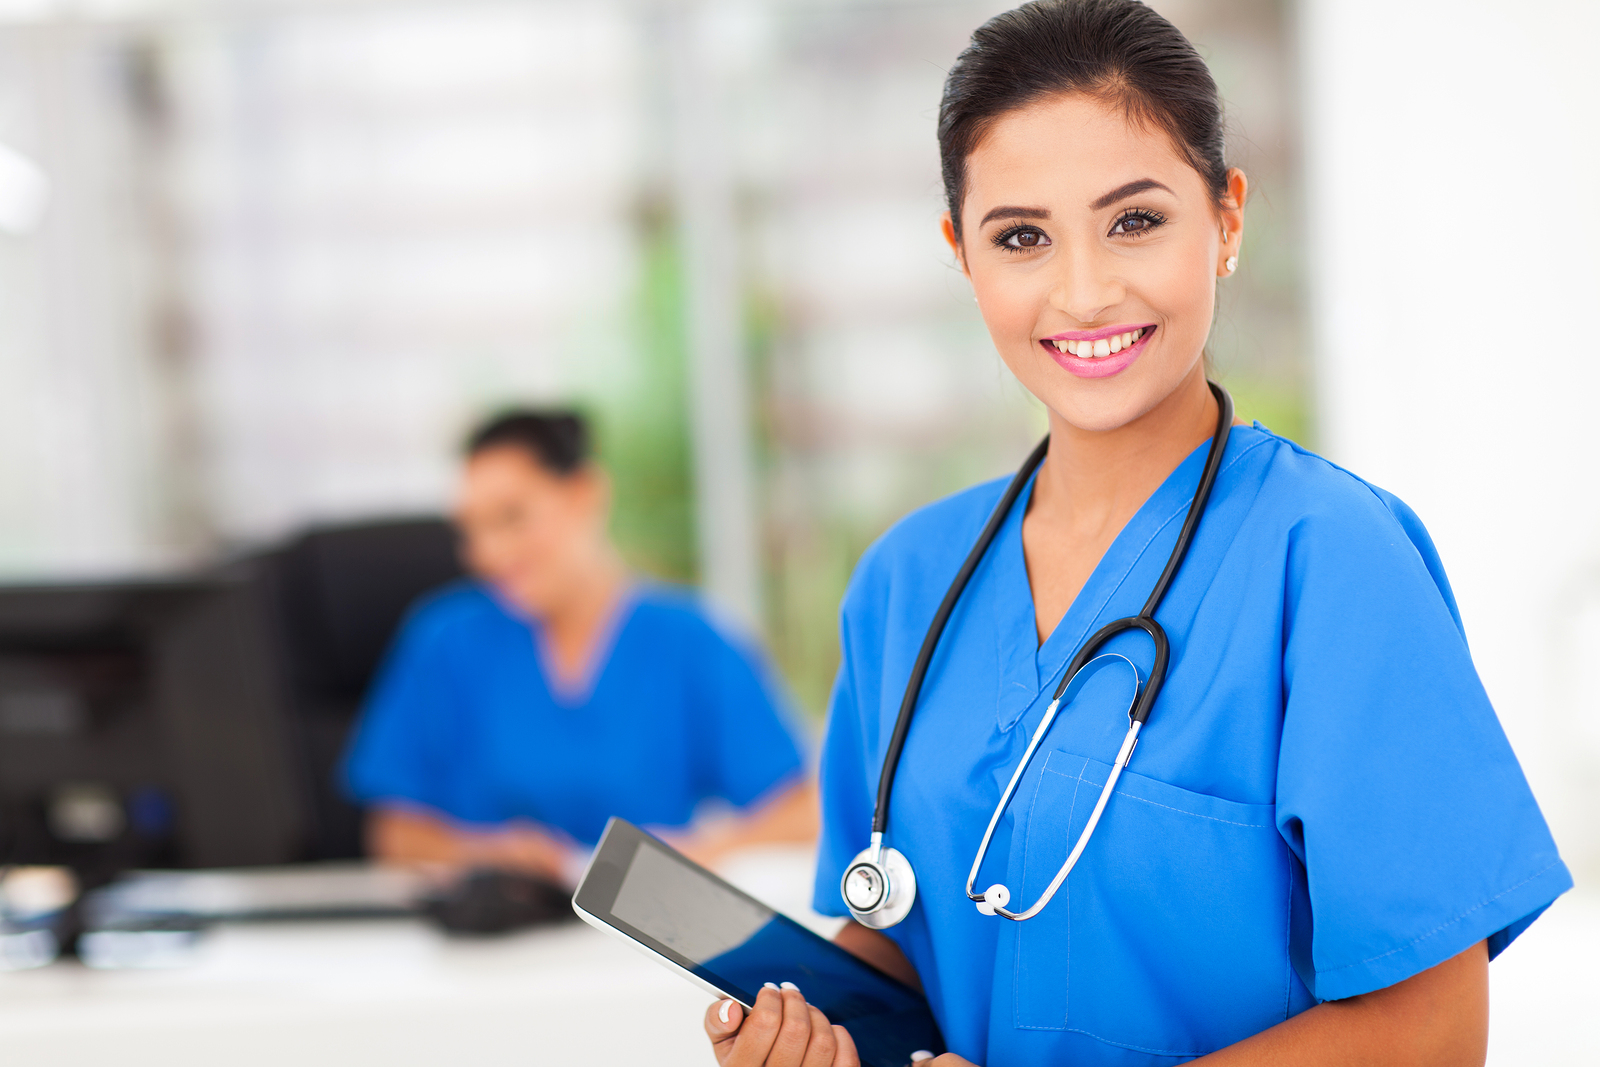 Vacancies for Registered Nurse in Canada